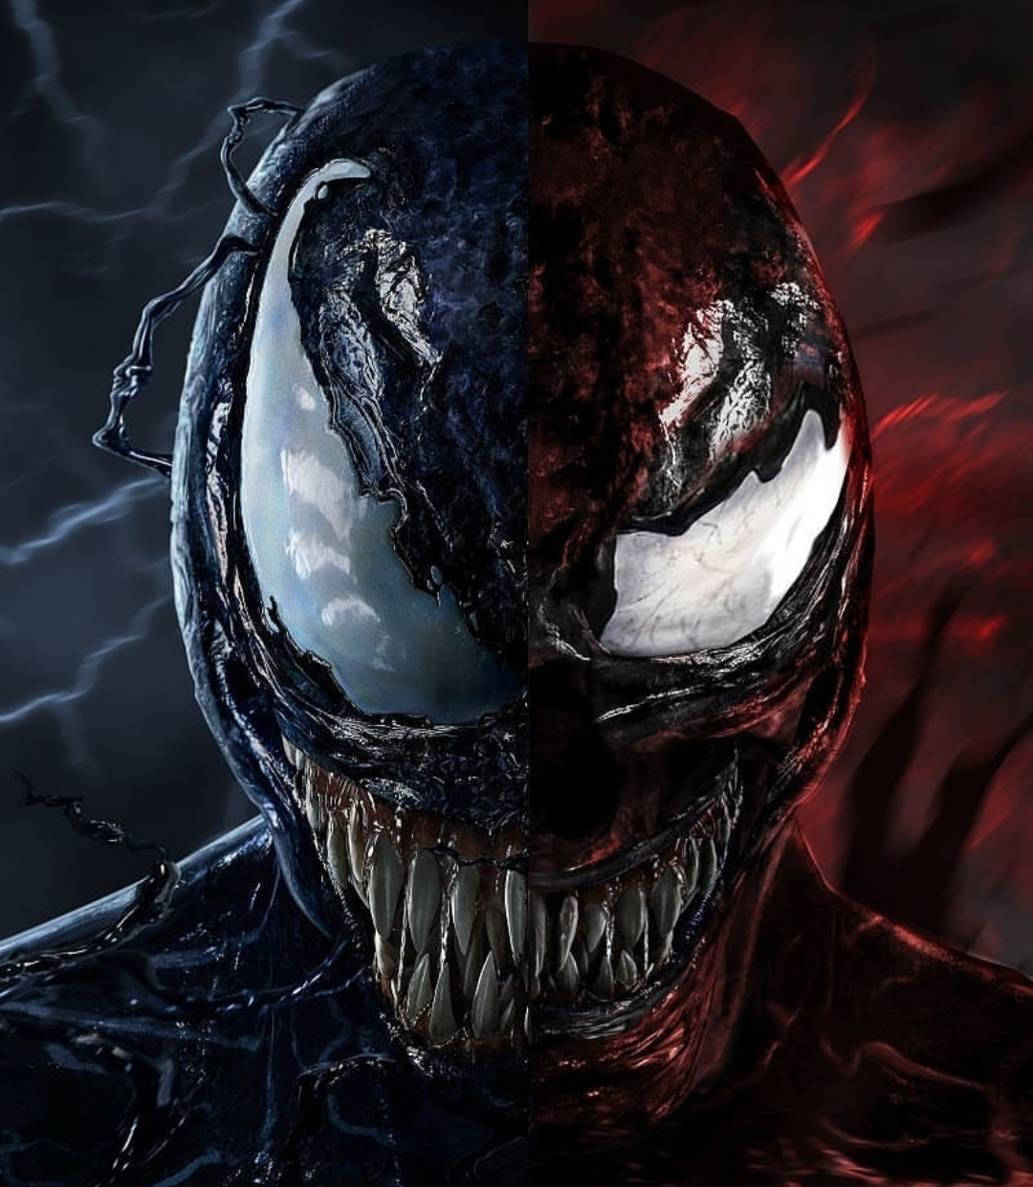 Venom og Carnage går hinanden i møde i kampen om kontrol over NYC. Wallpaper